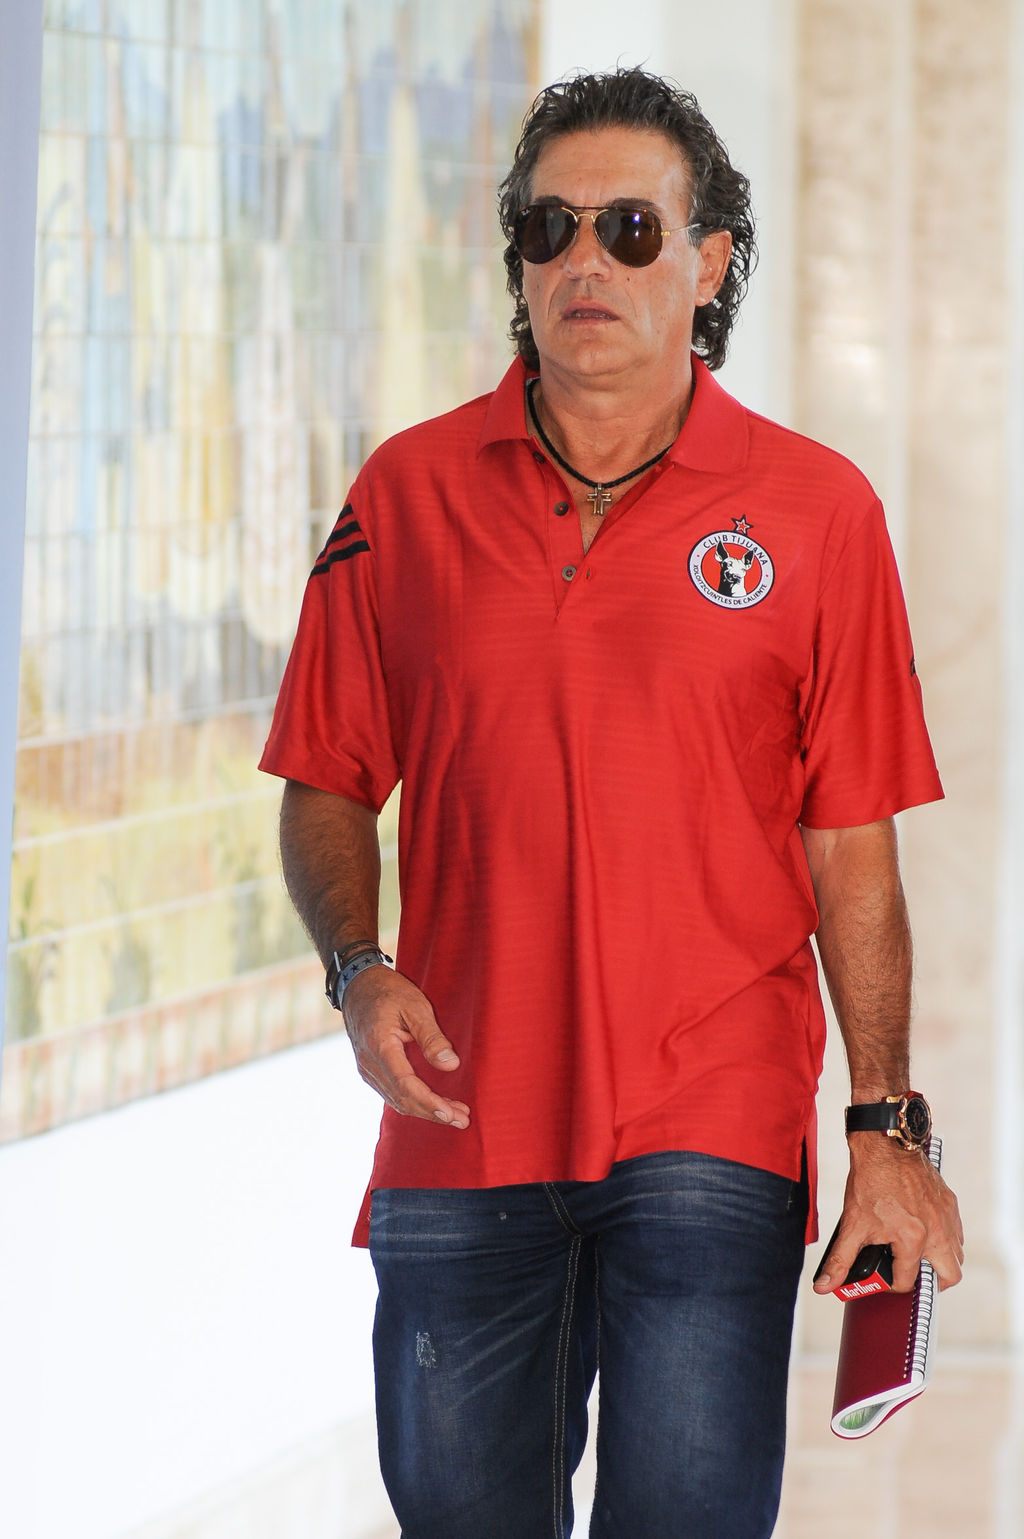 Rubén Omar Romano es el nuevo director técnico de los Xoloitzcuintles de Tijuana. Romano quiere ir paso a paso con Xolos de Tijuana